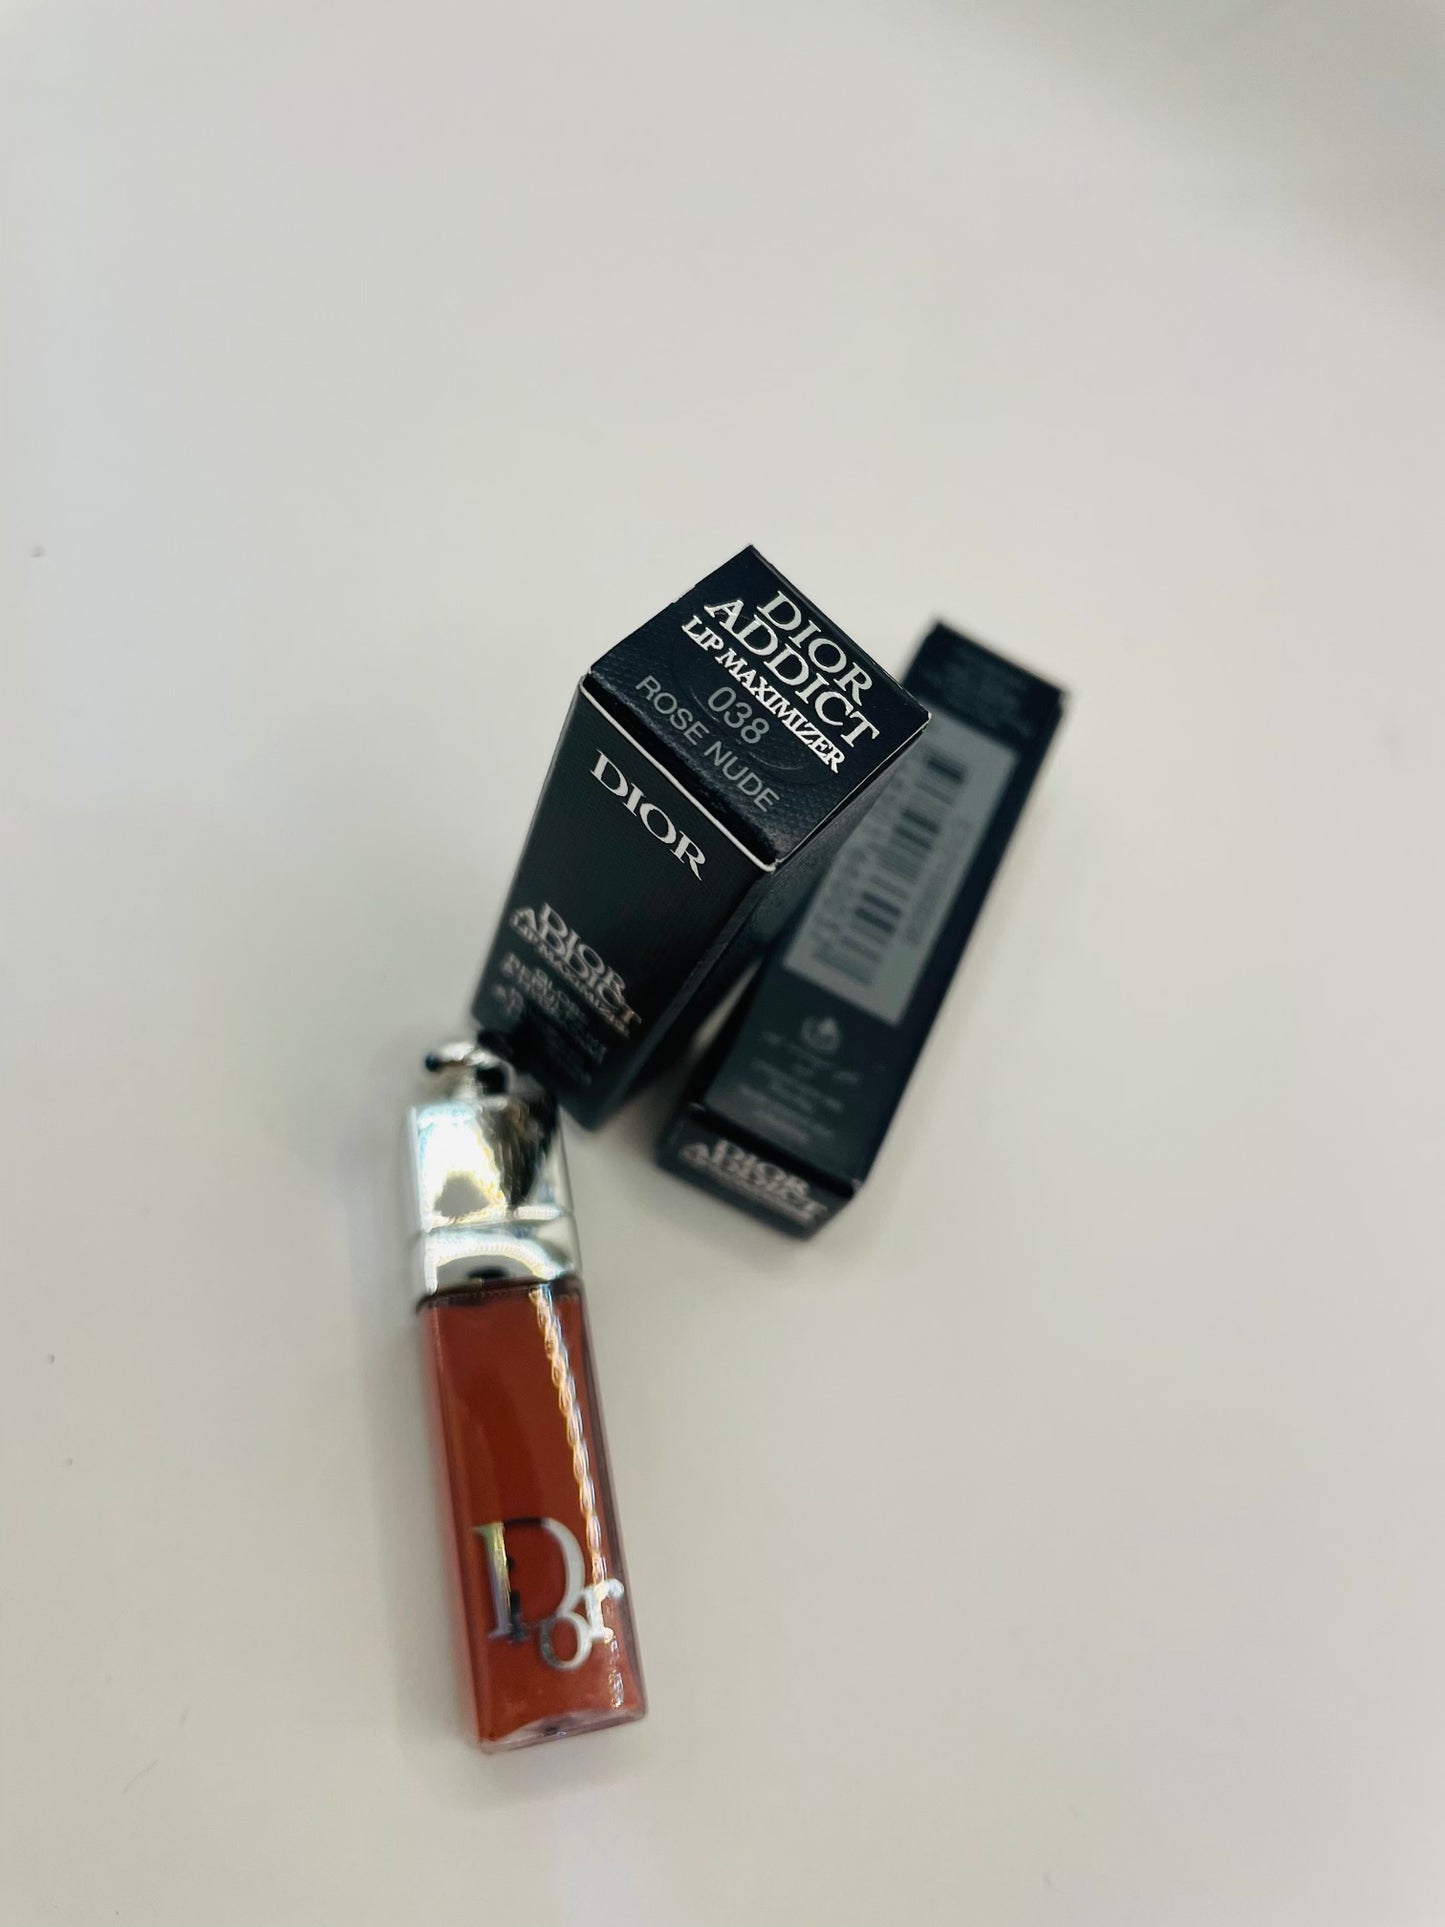 Dior lip miximizer